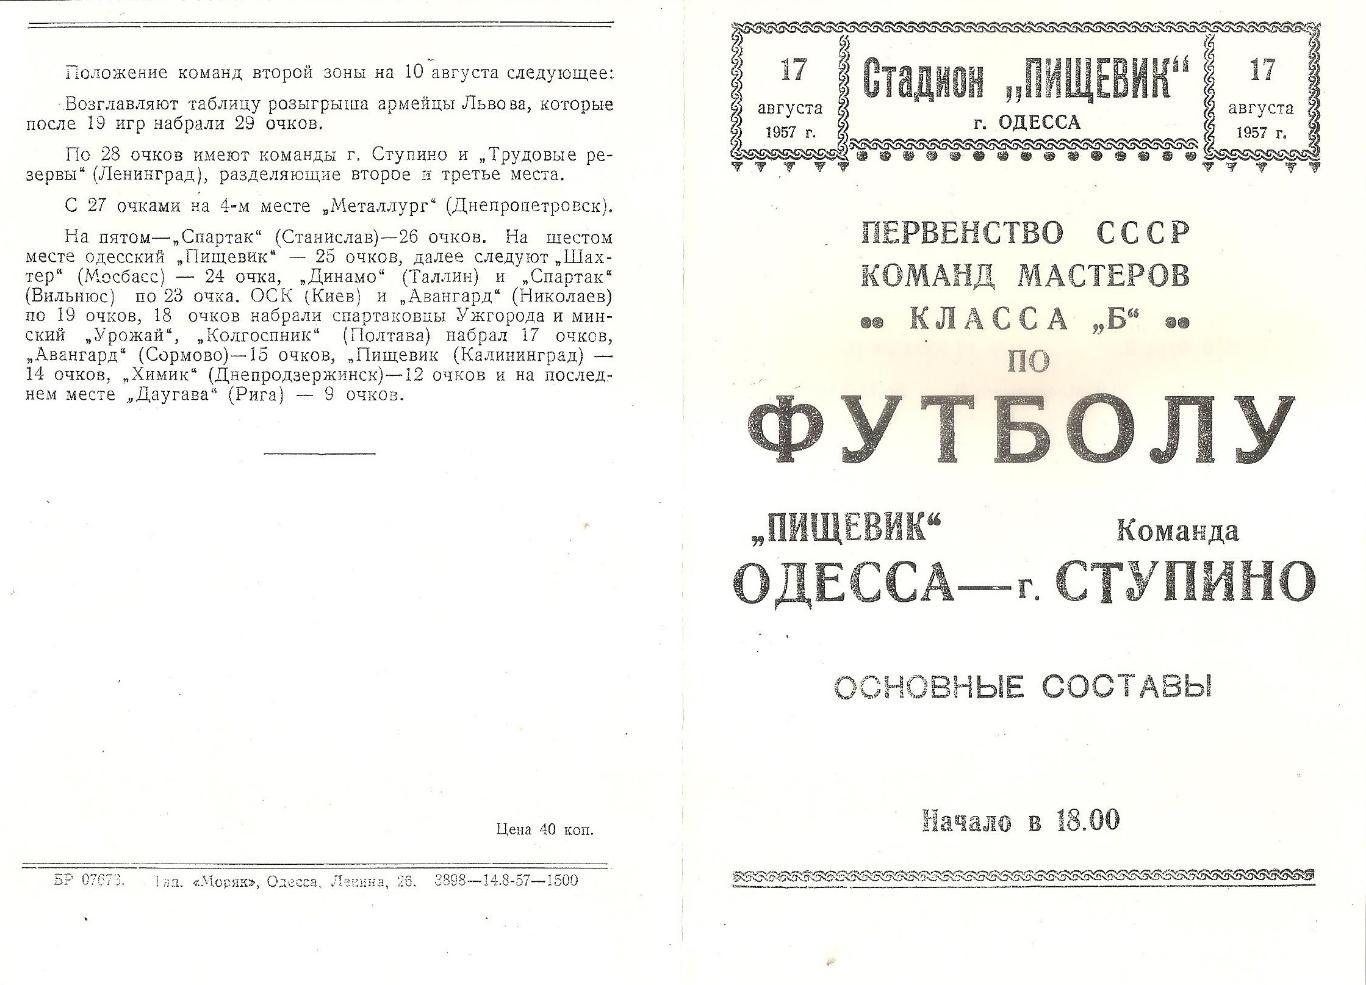 Пищевик Одесса - Команда г.Ступино 17.08.1957г. (копия)